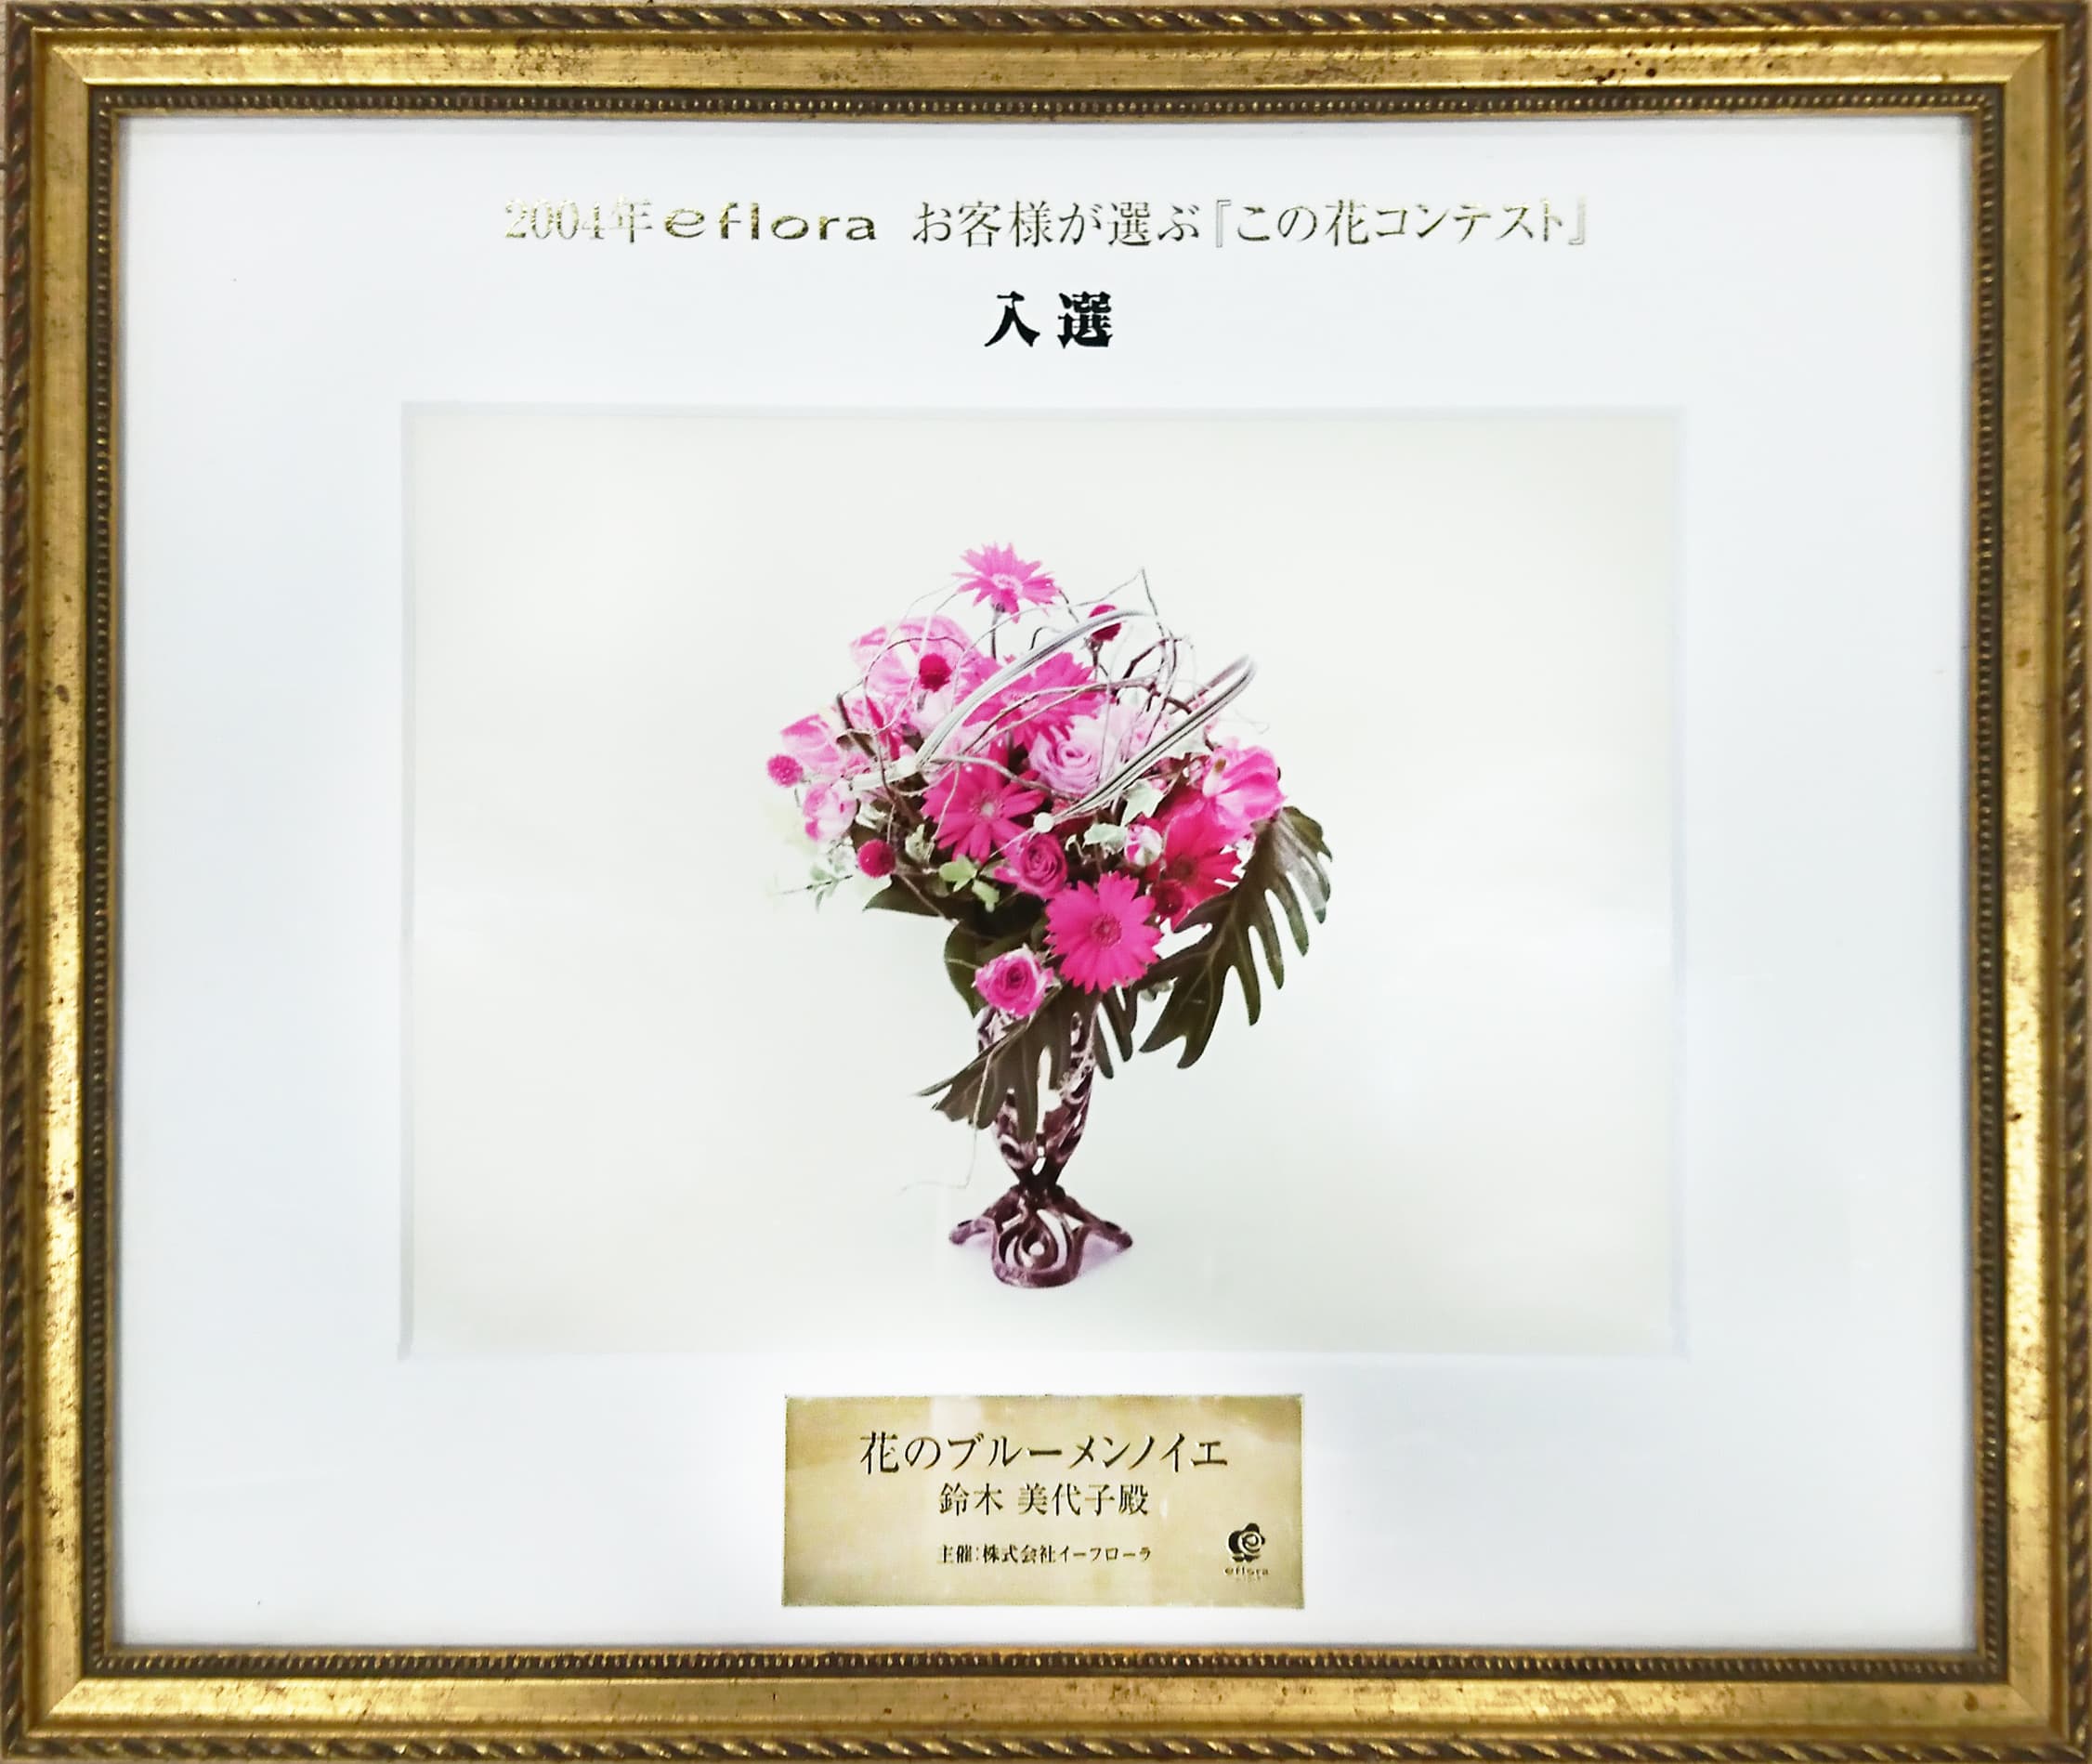 2004年イーフローラお客様が選ぶ『この花コンテスト』全国トップ10入選作品の賞状